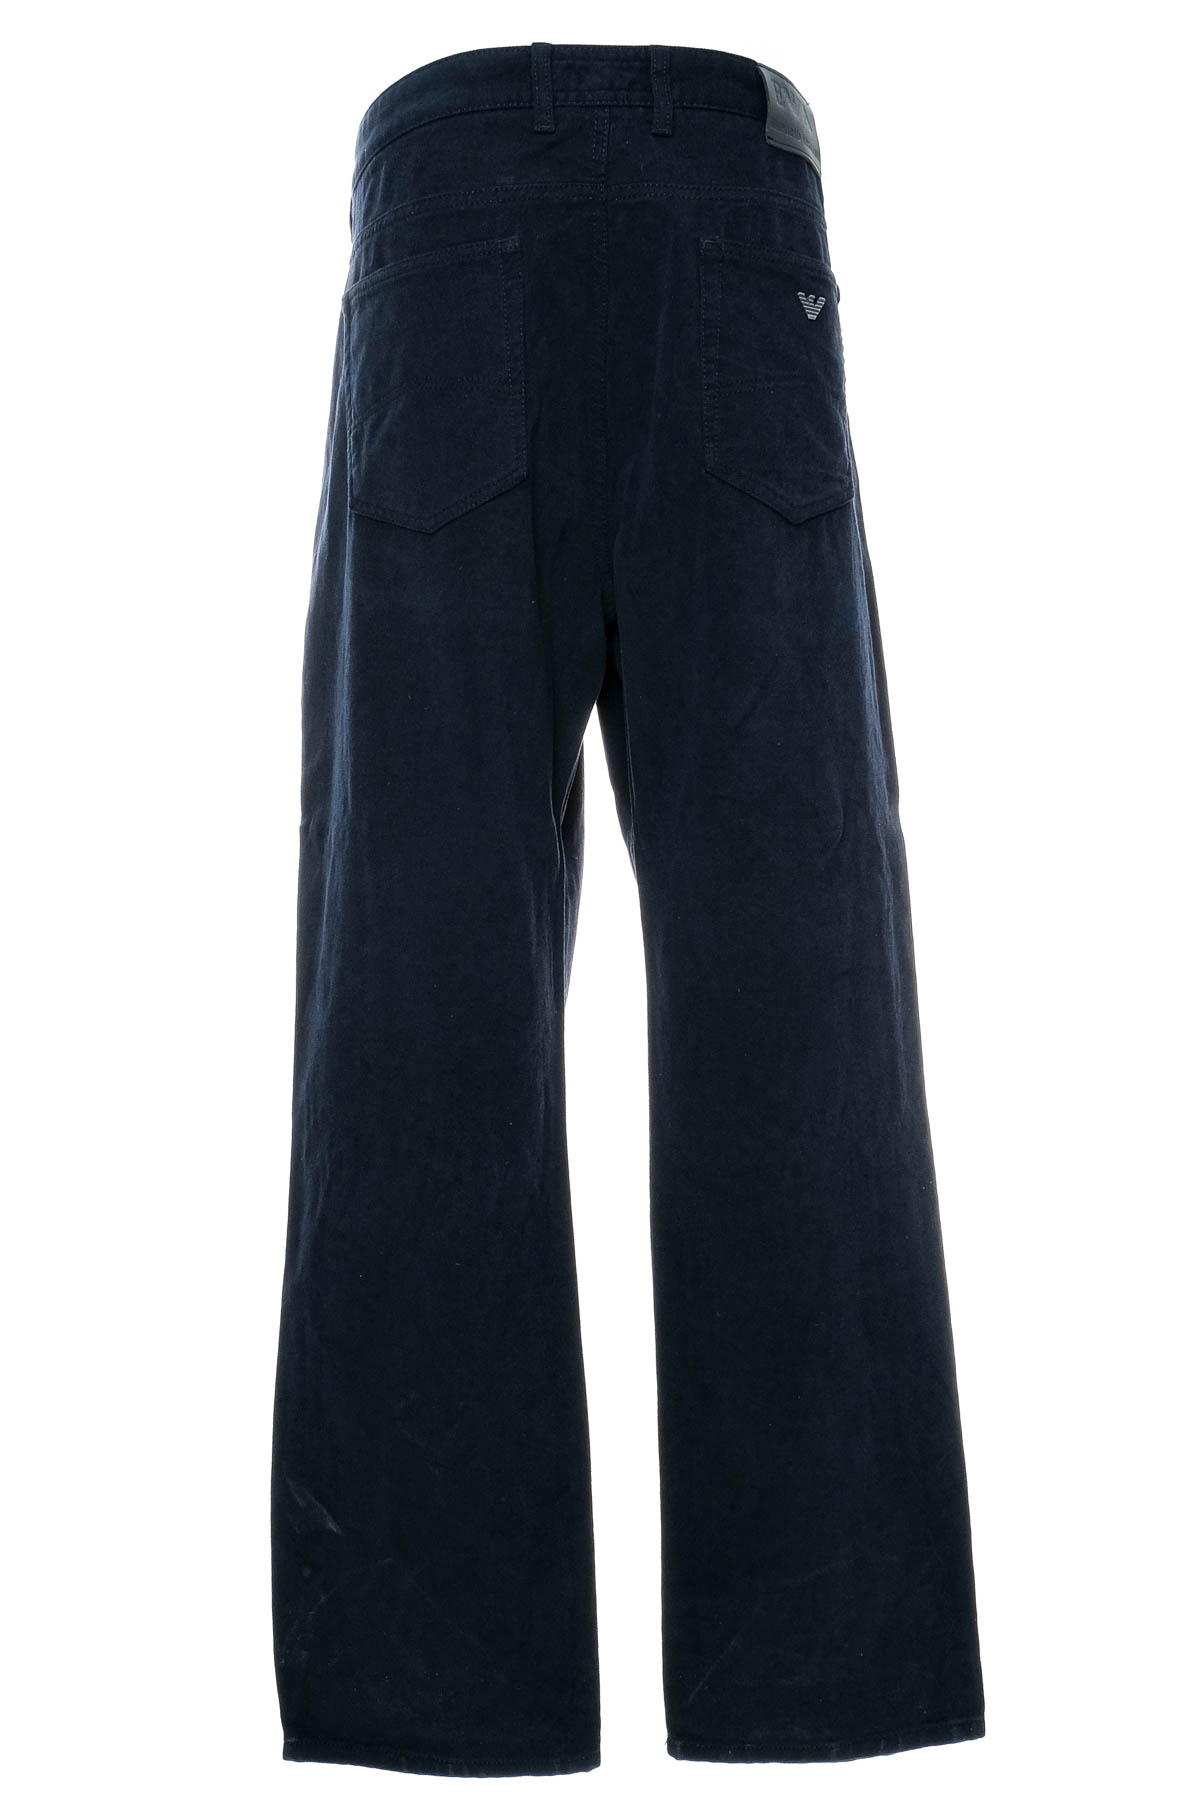 Ανδρικά παντελόνια - Armani Jeans - 1